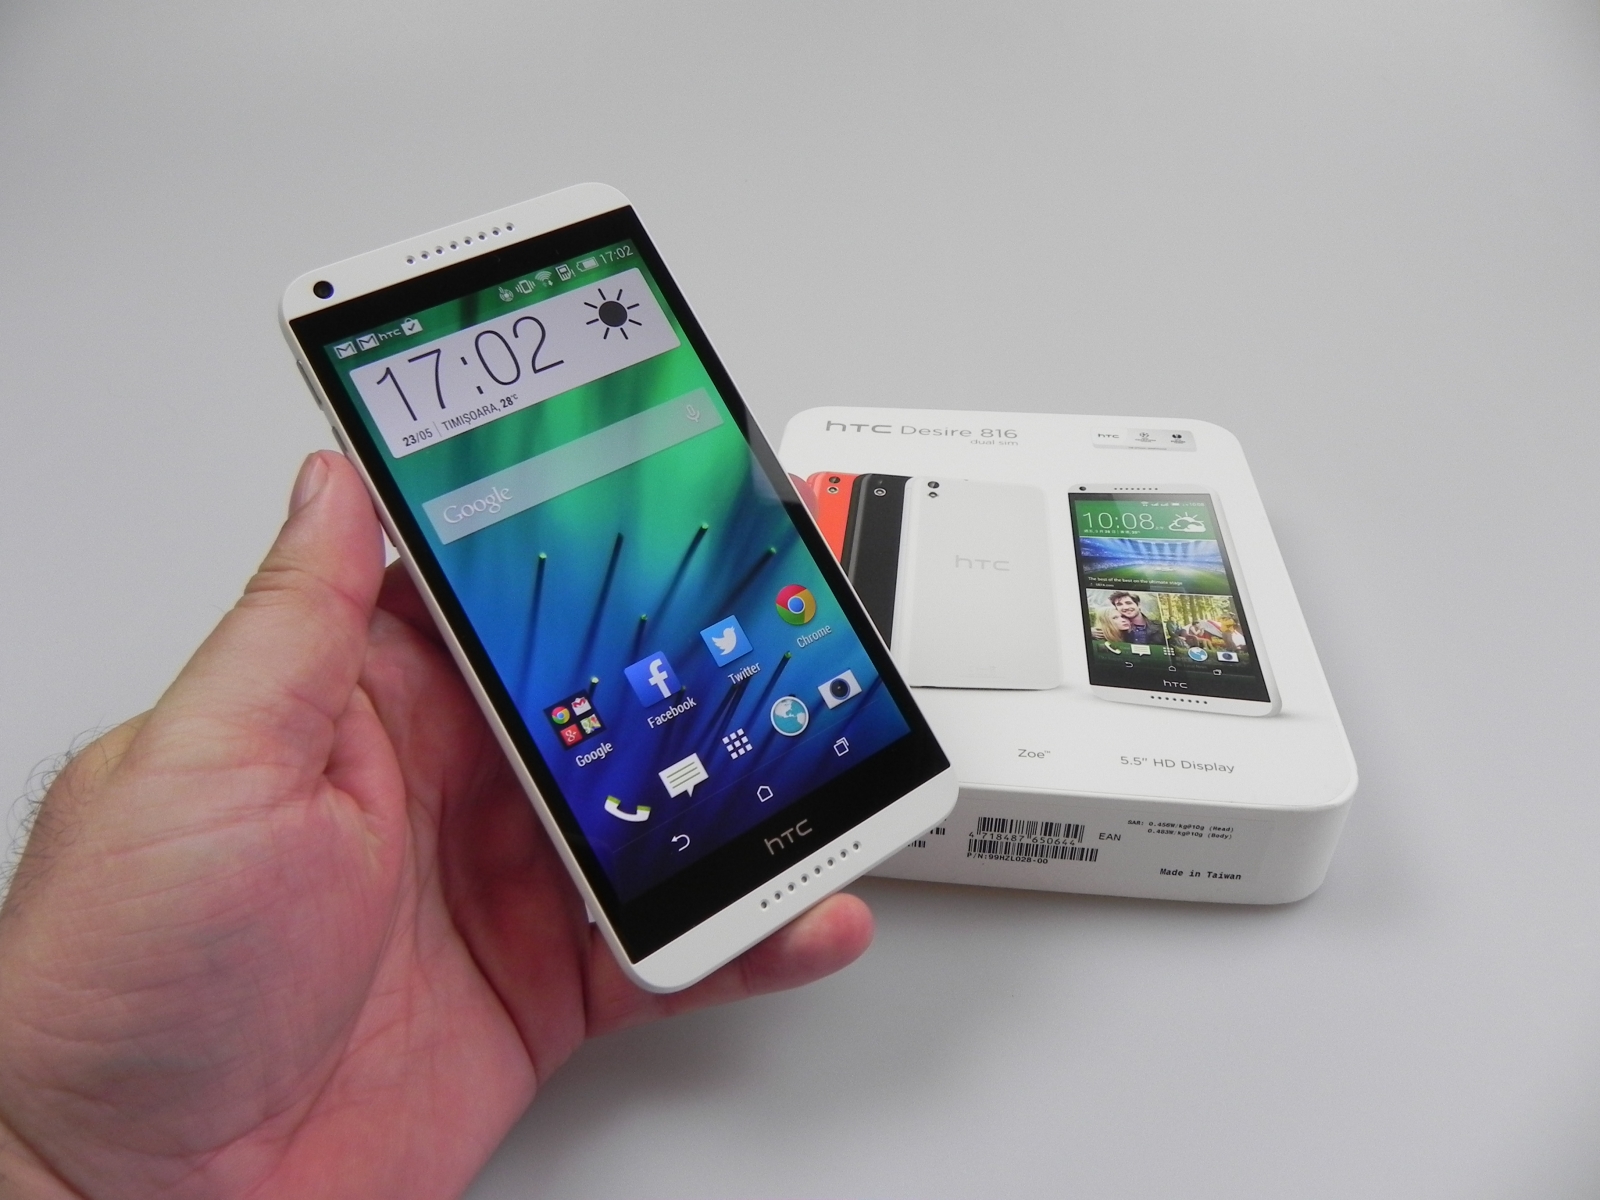 Versiunea dual-SIM a lui HTC Desire 816 este actualizata la Android 6.0 Marshmallow in aceste momente